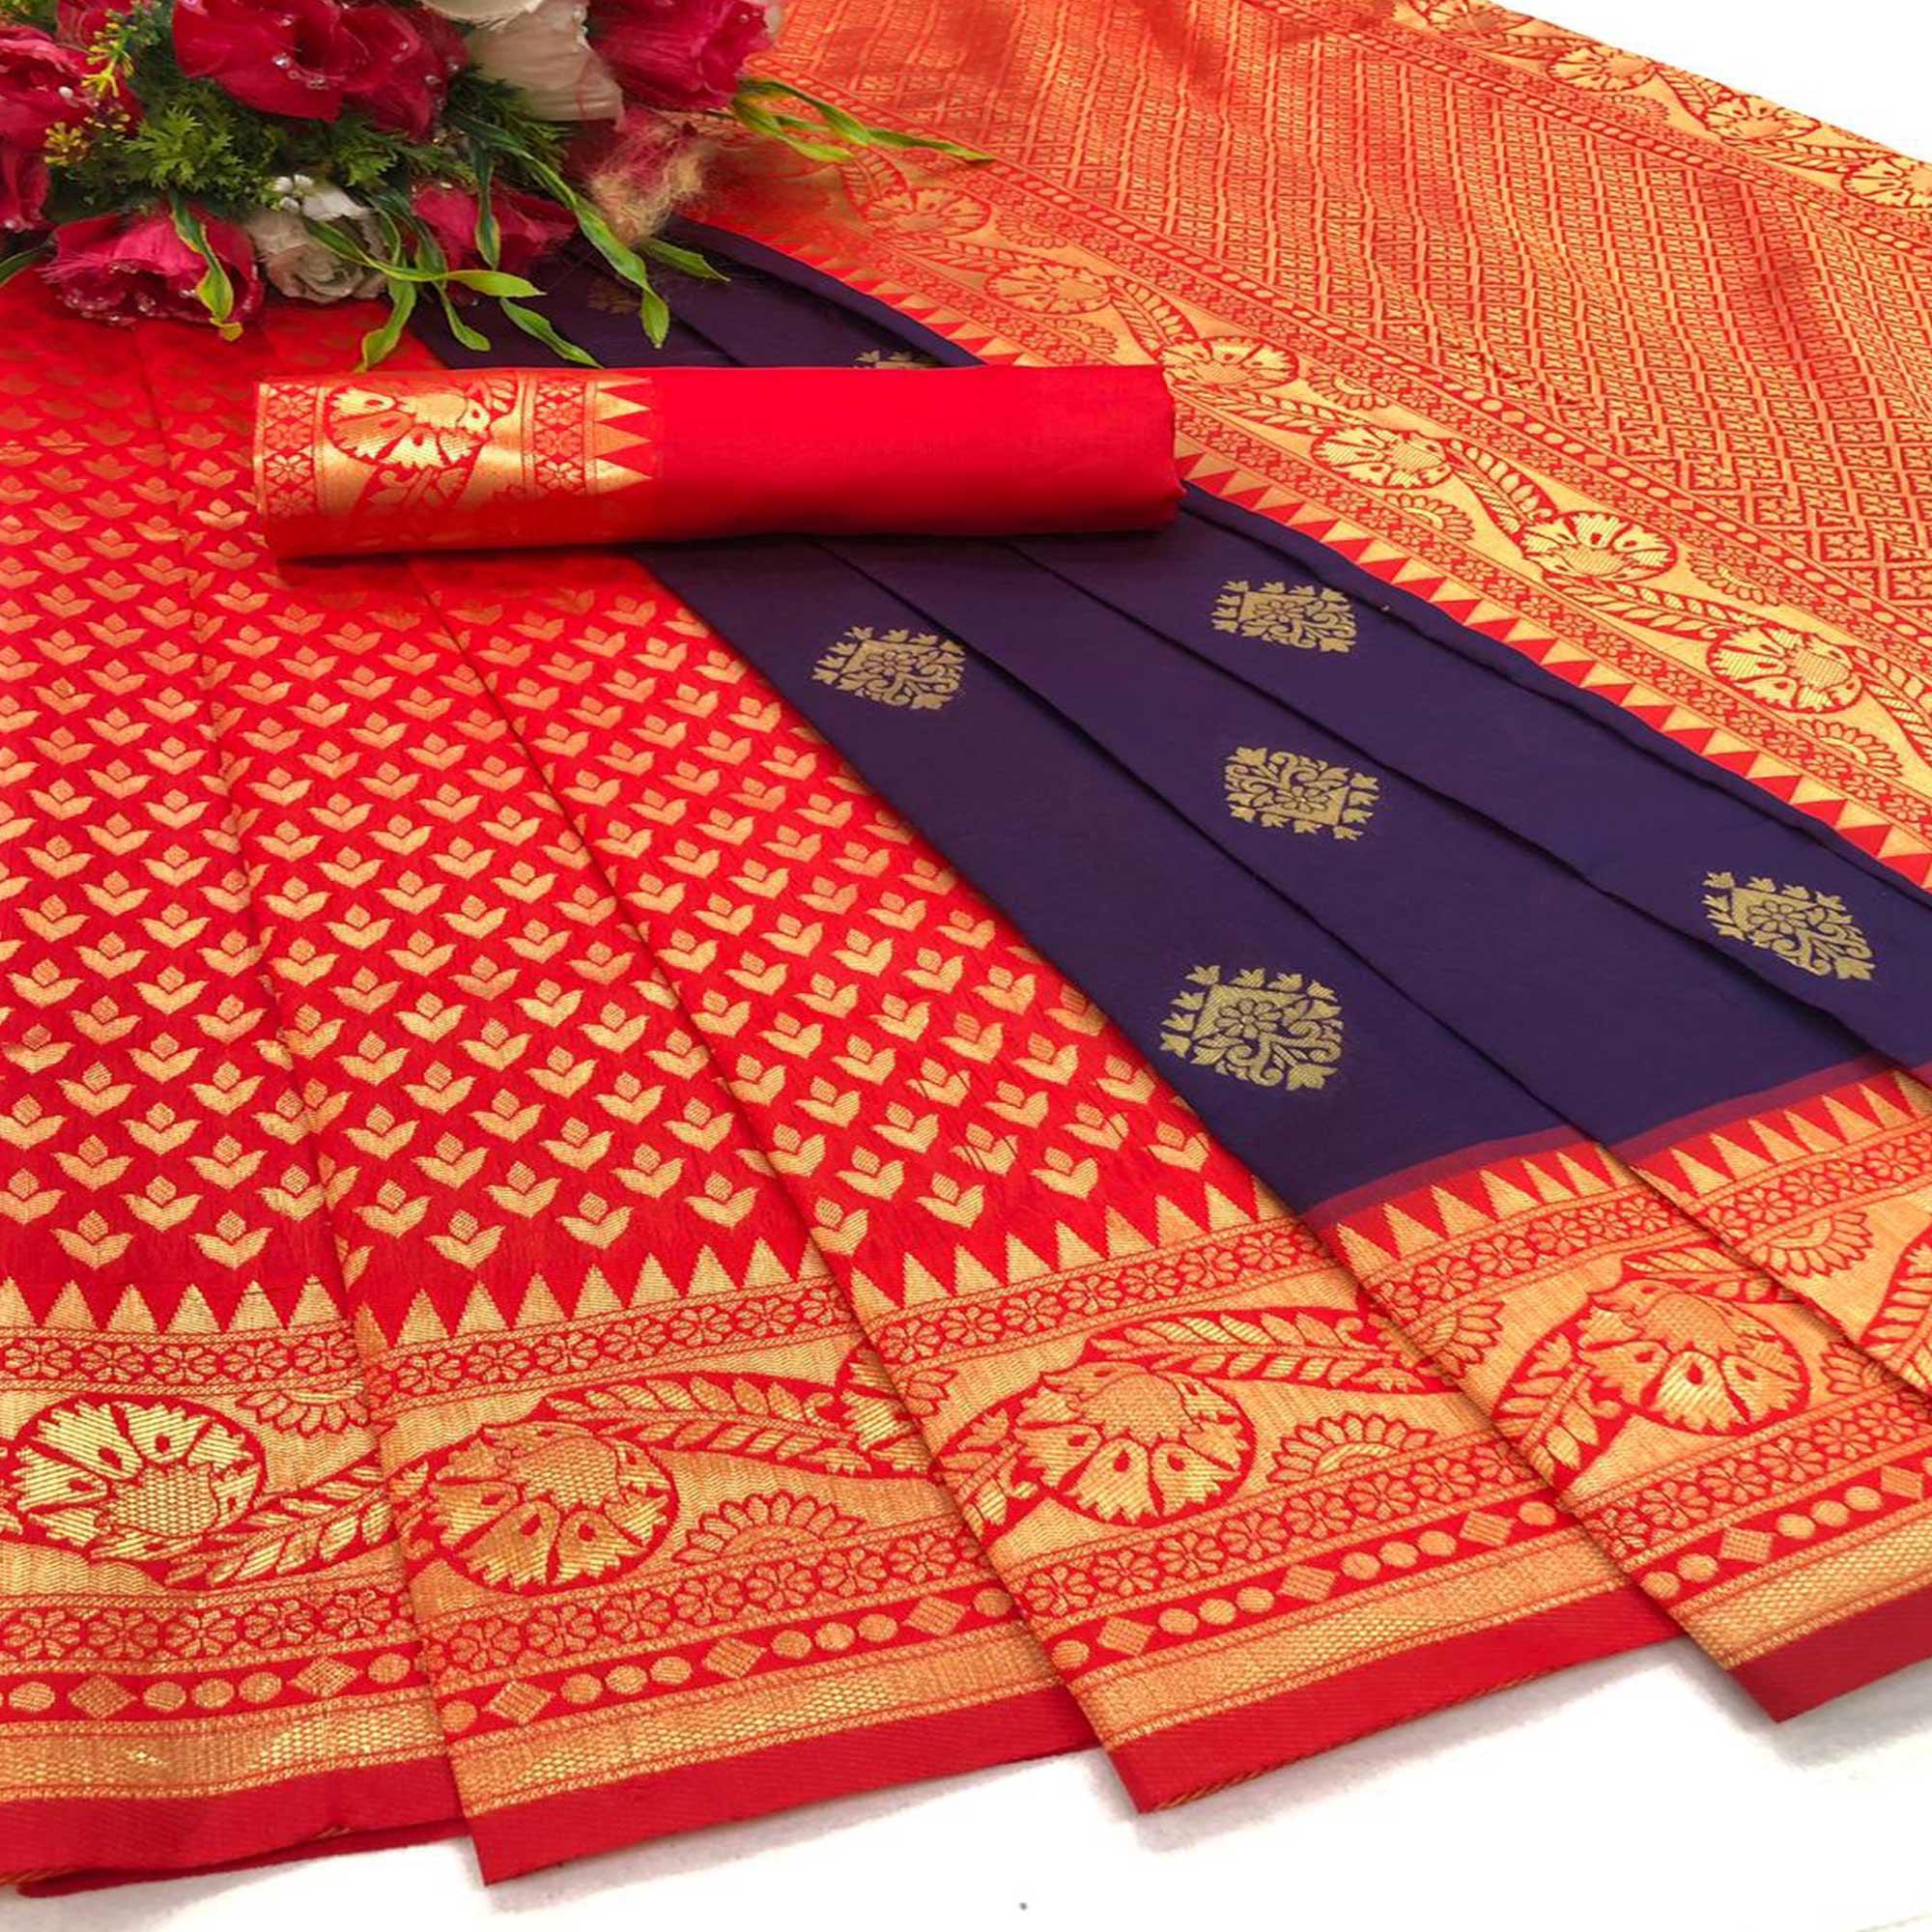 Red-Purple Festive Wear Woven Butti Designer Border Soft Lichi Silk Saree - Peachmode